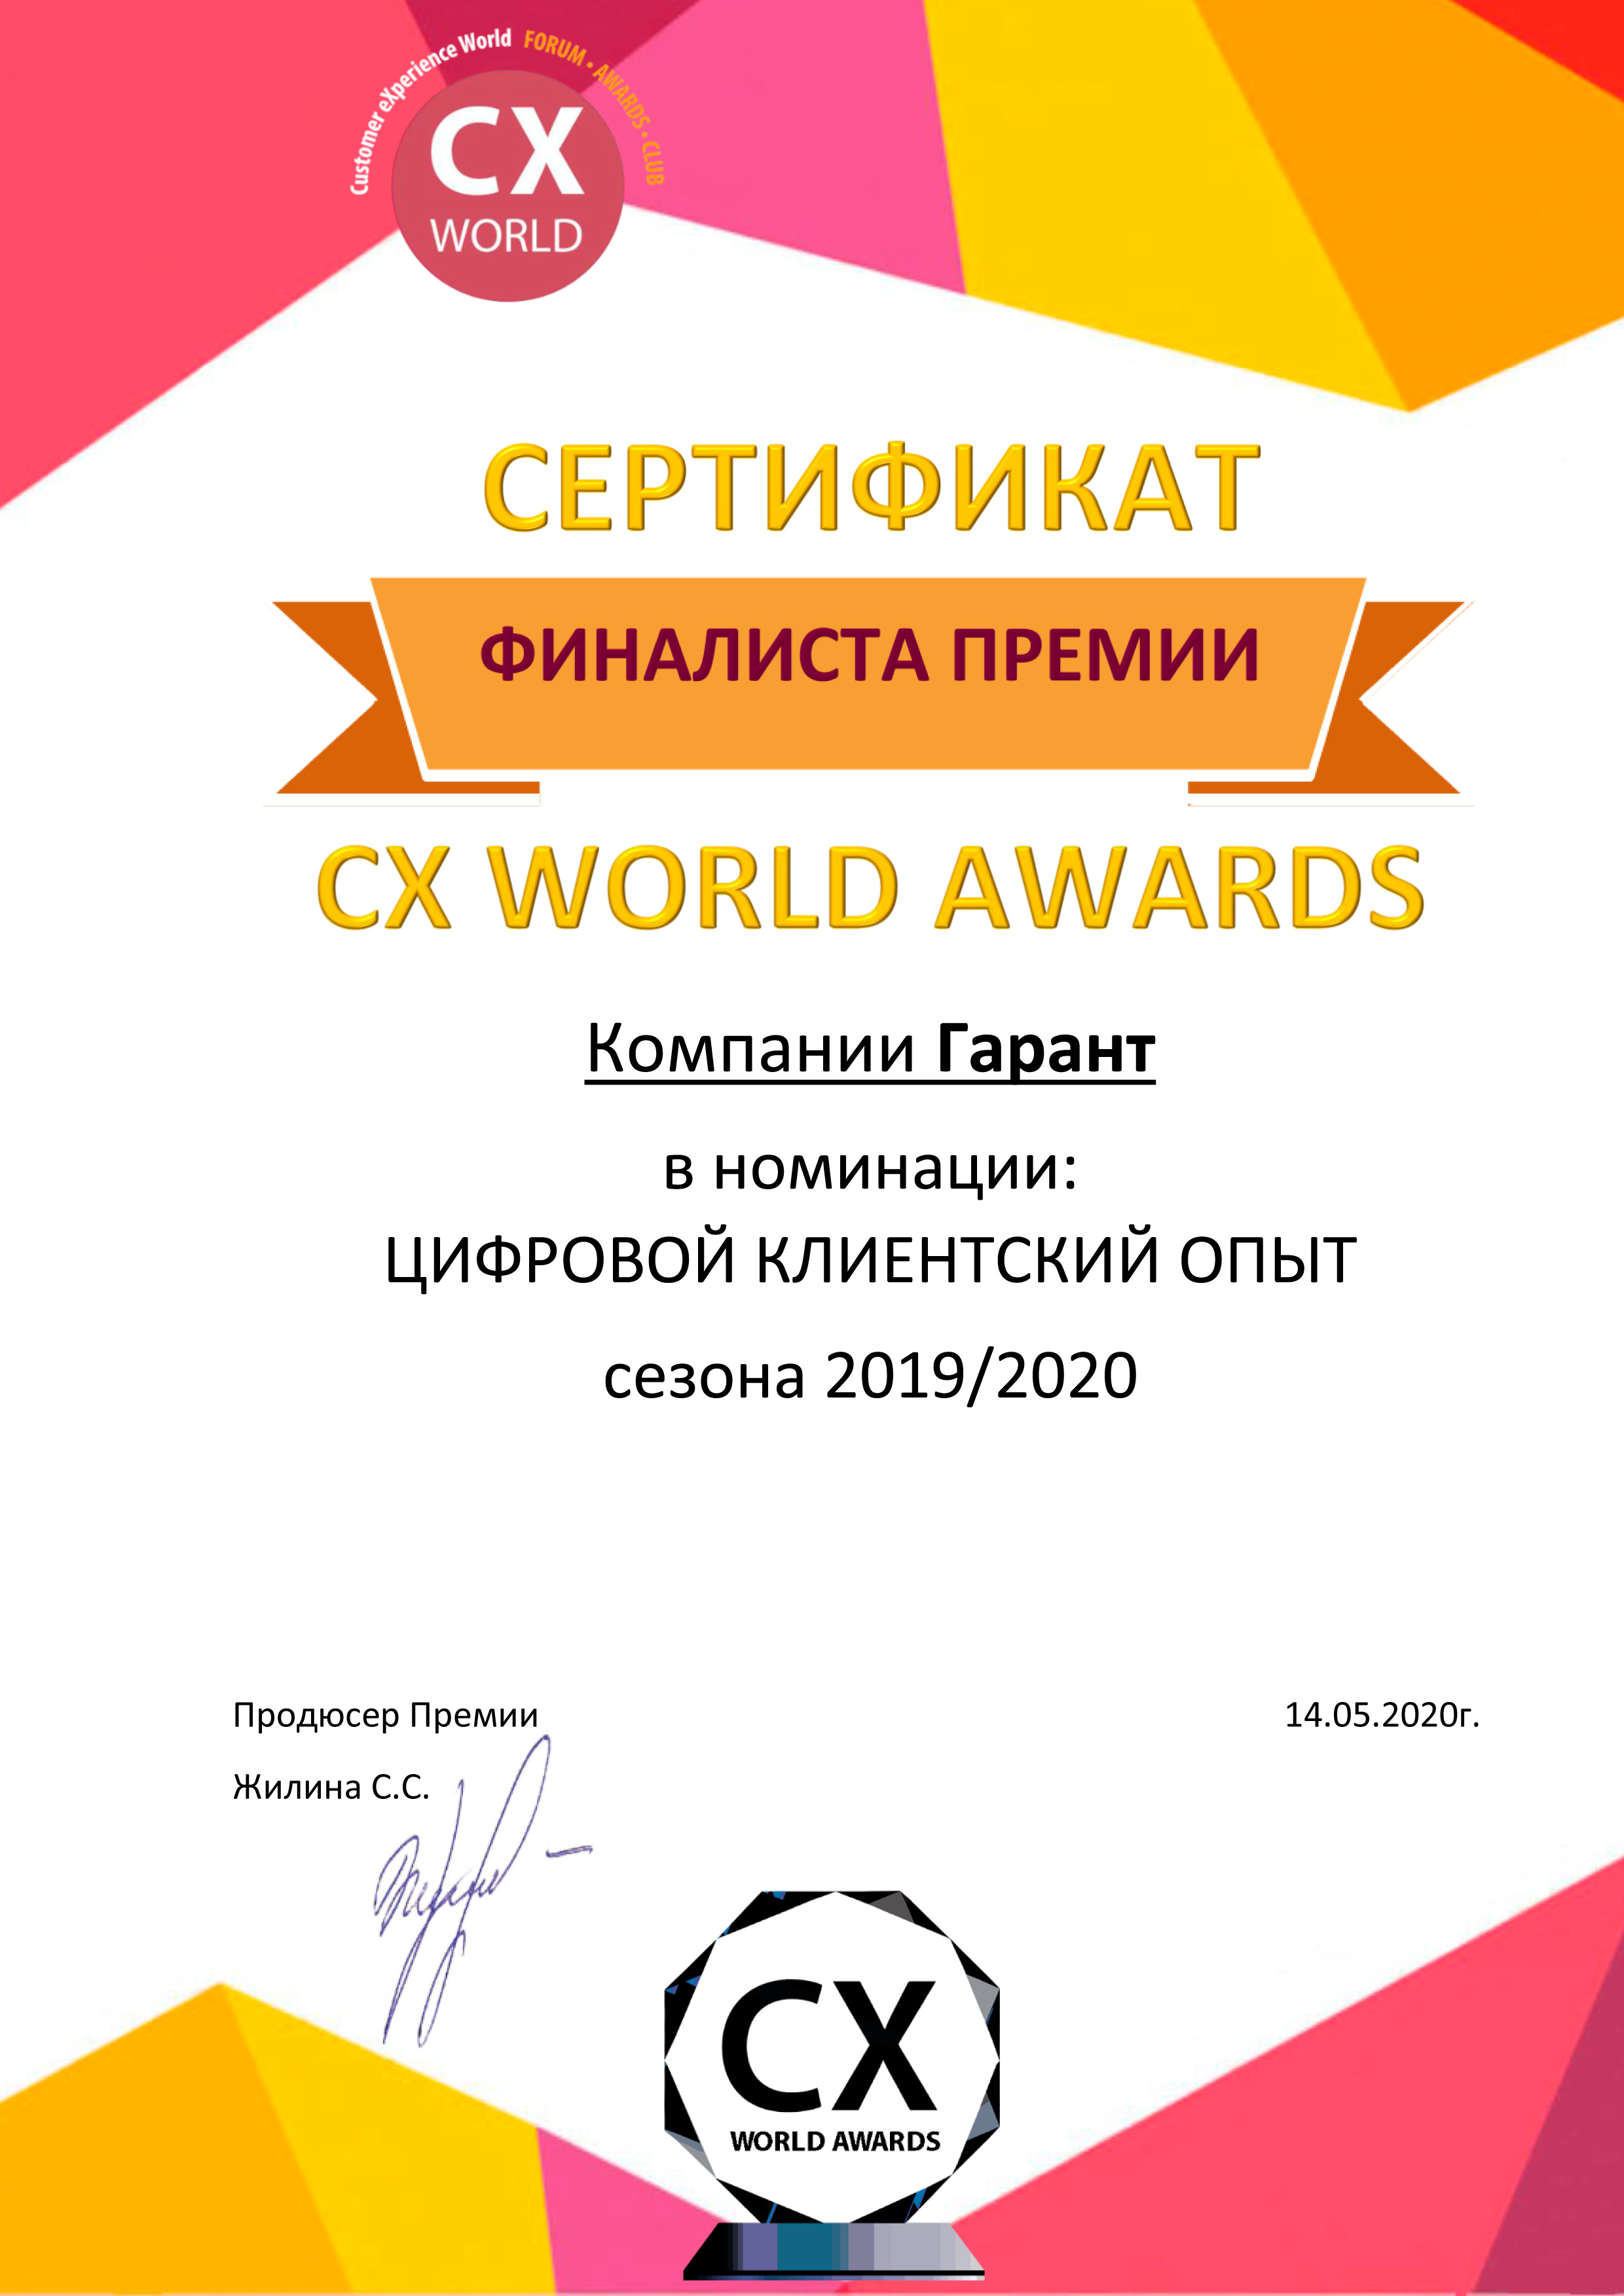 Сертификат финалиста премии  CX WORLD AWARDS  в номинации «ЦИФРОВОЙ КЛИЕНТСКИЙ ОПЫТ сезона 2019/2020»